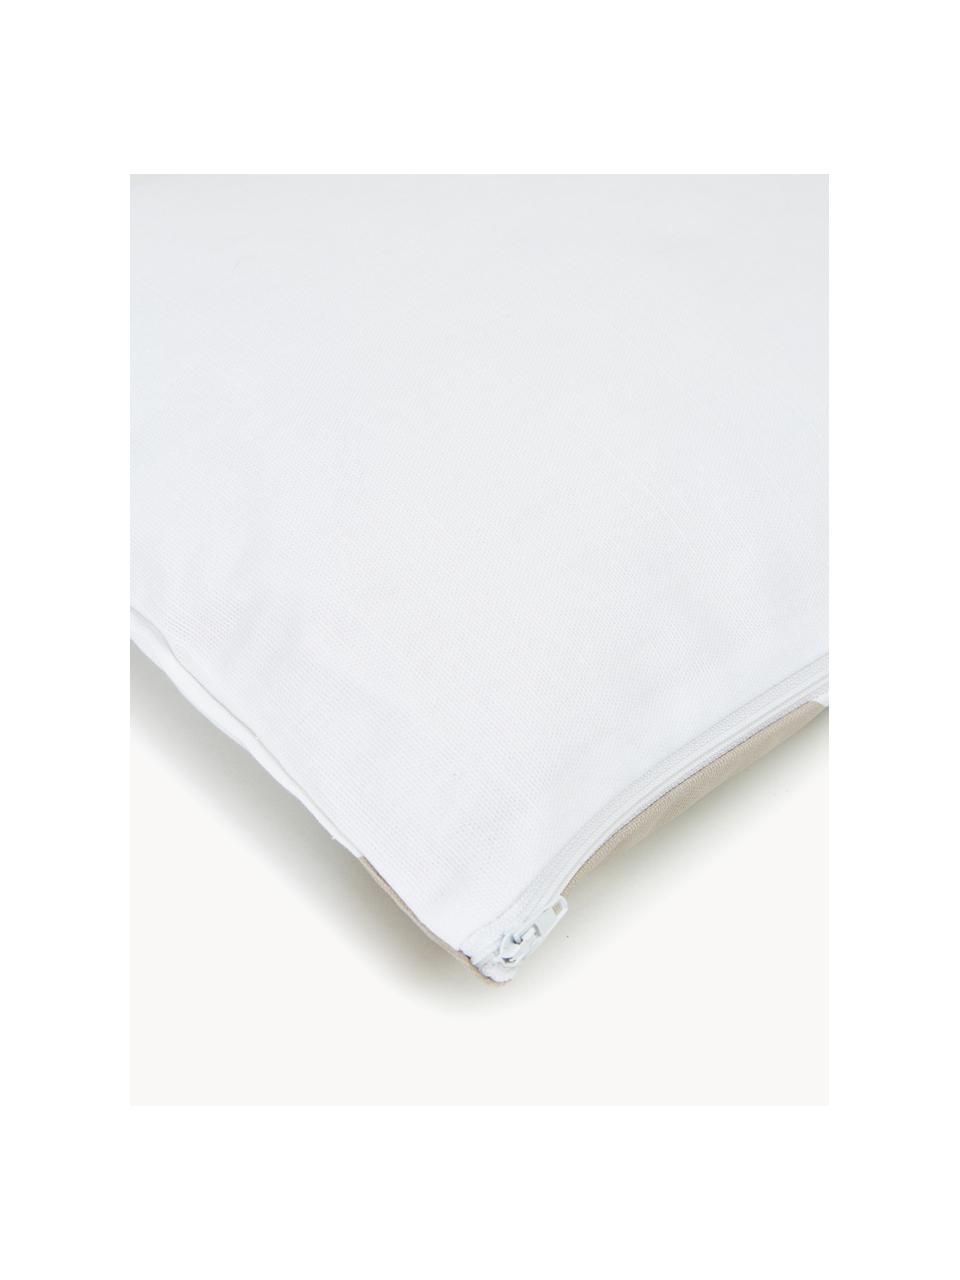 Housse de coussin rectangulaire blanc taupe Ren, 100 % coton, Blanc, beige, larg. 30 x long. 50 cm